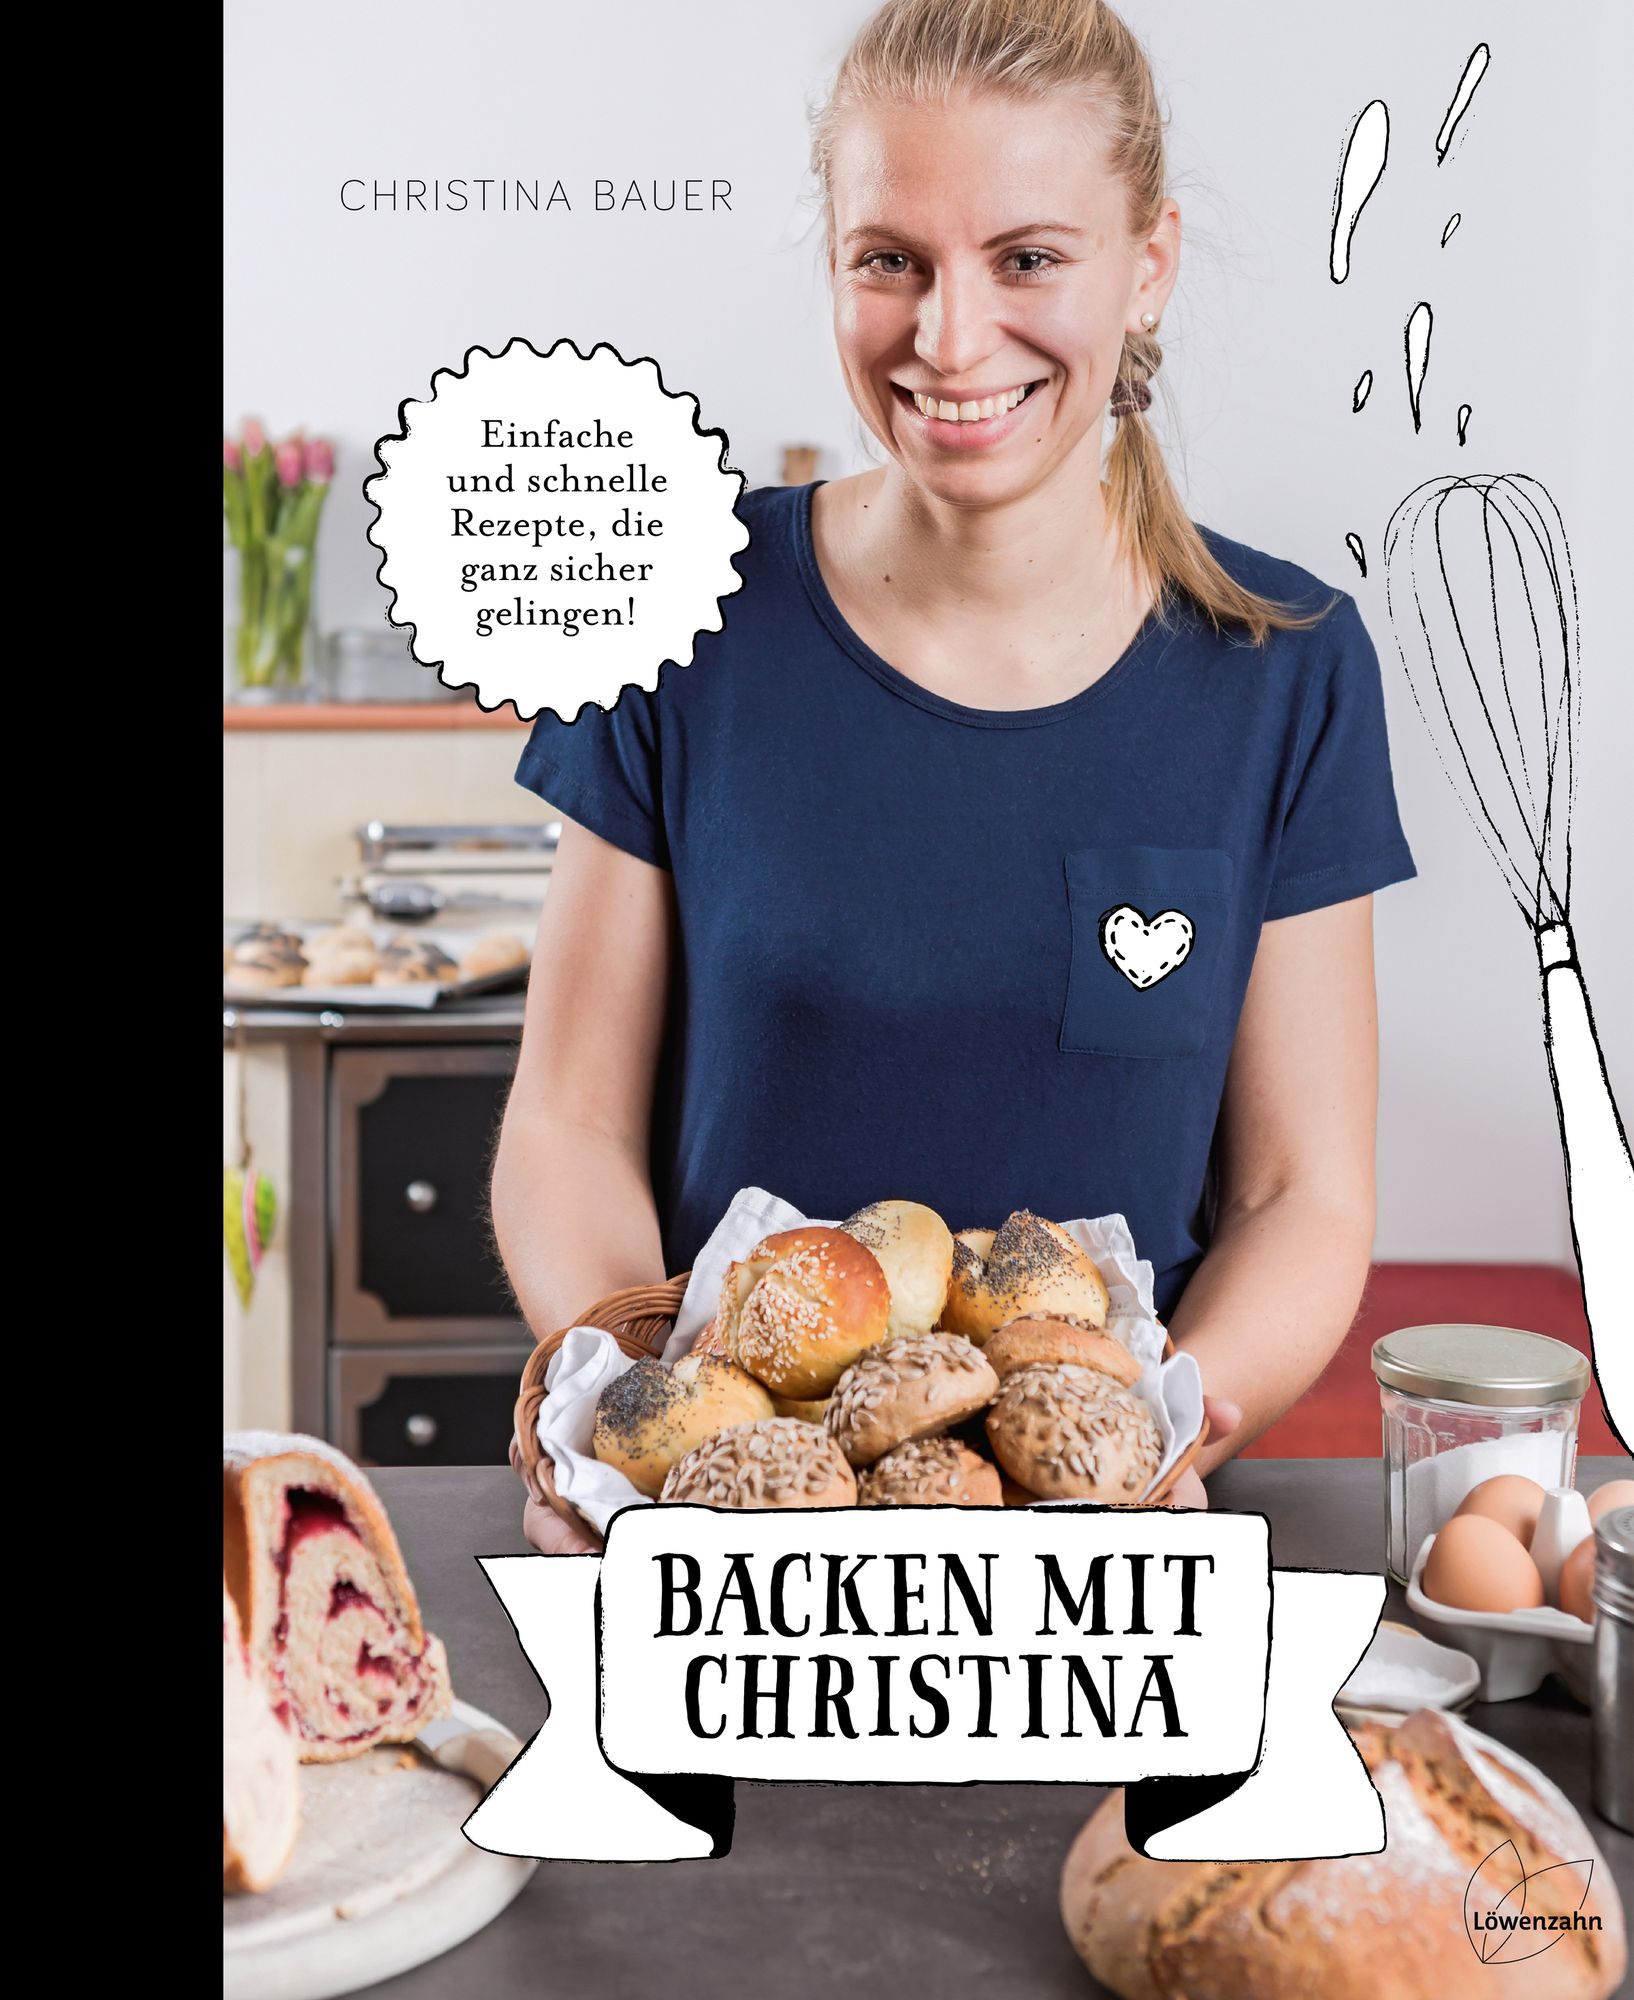 Backen mit Christina' von 'Christina Bauer' - Buch - '978-3-7066-2628-6